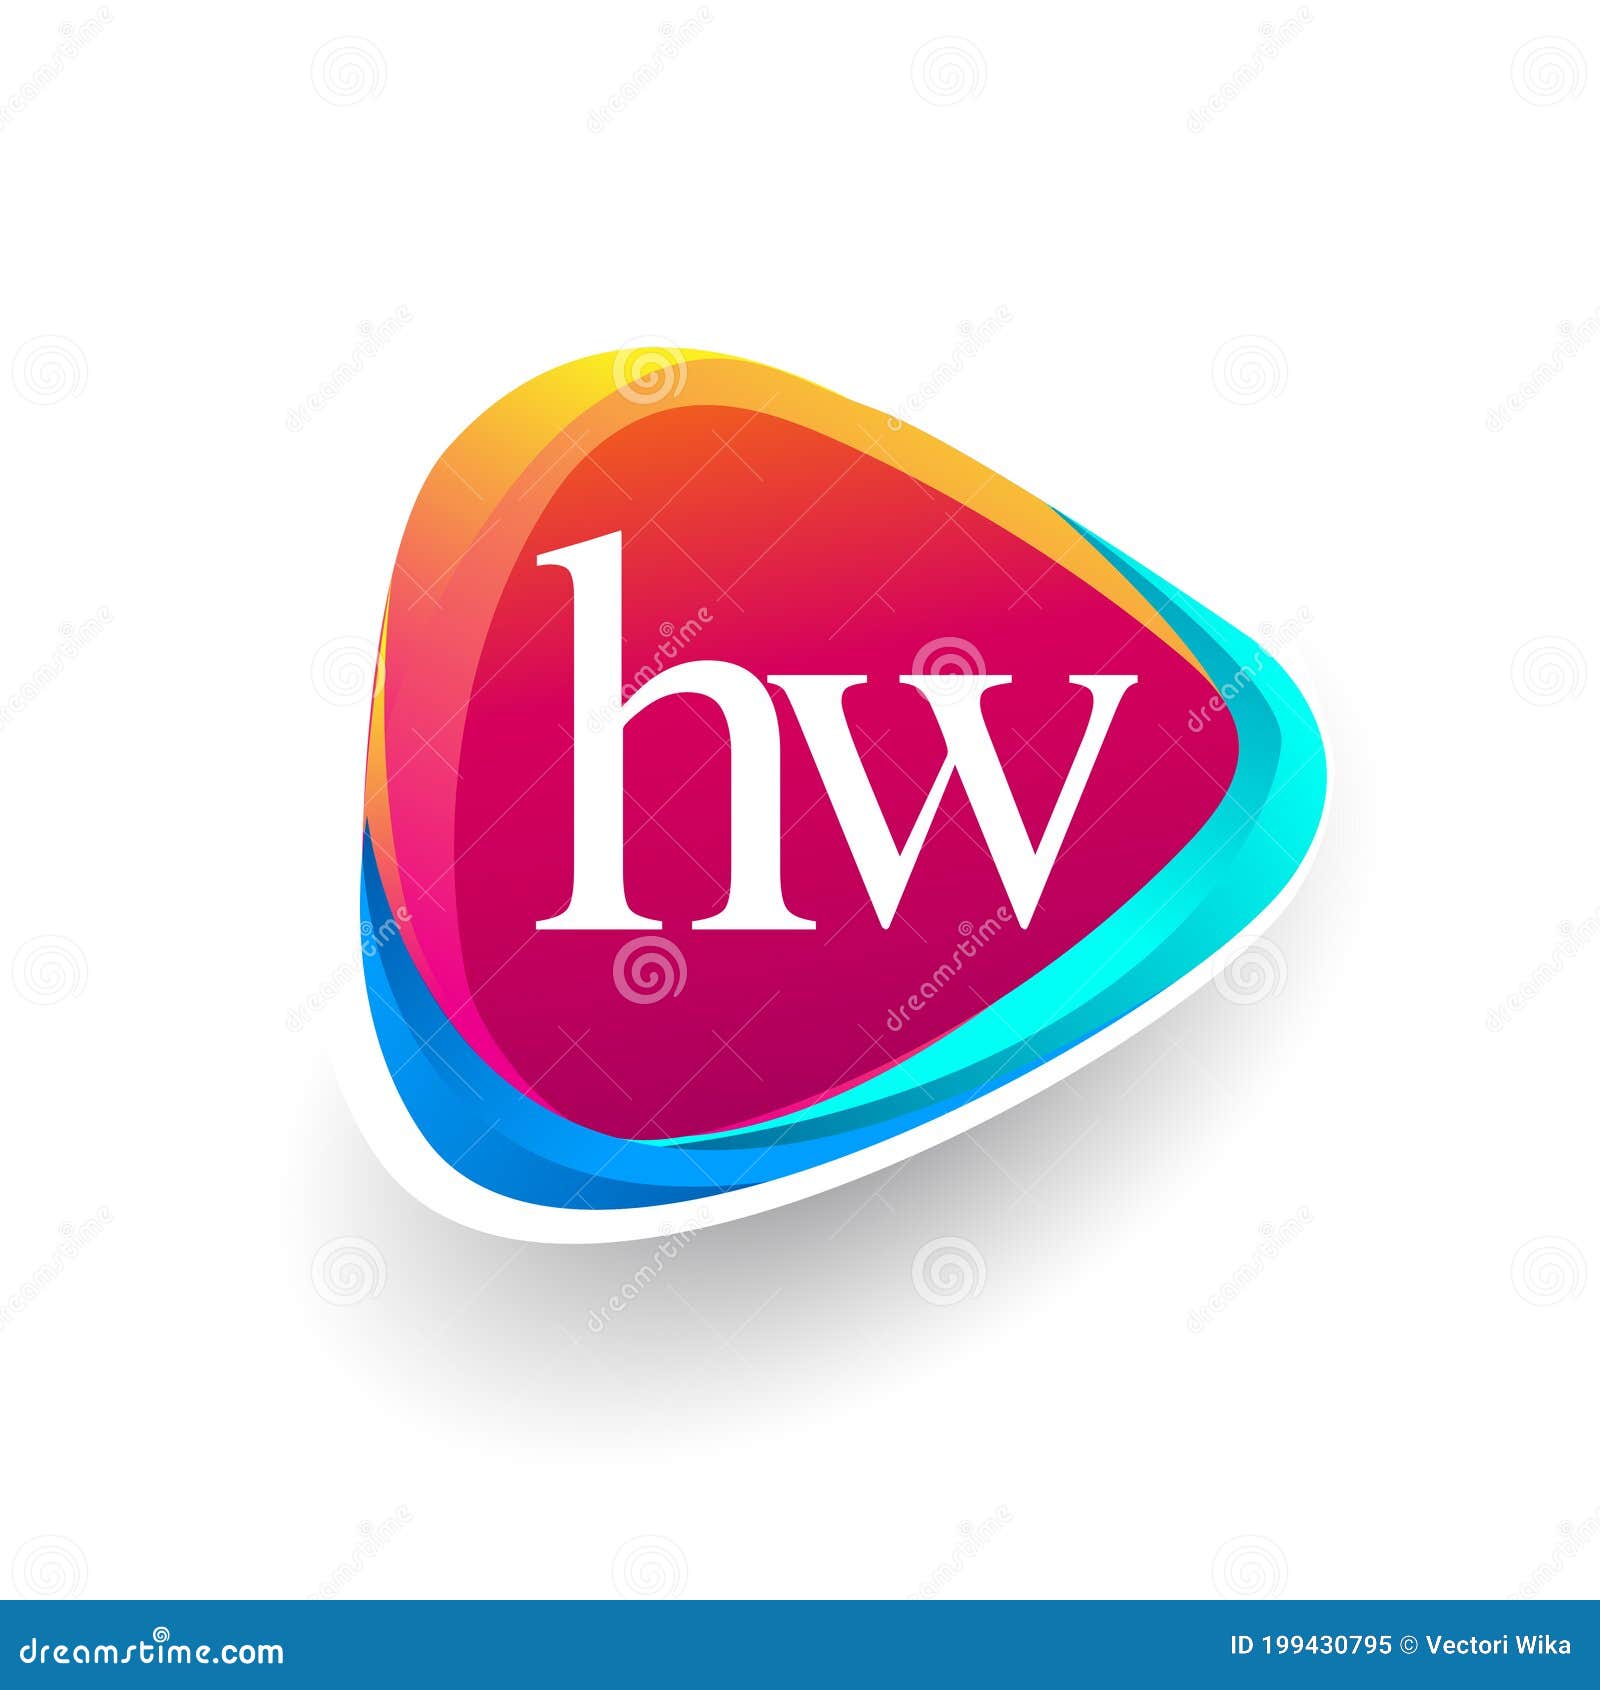 Free HW Logo Designs - DIY HW Logo Maker - Designmantic.com